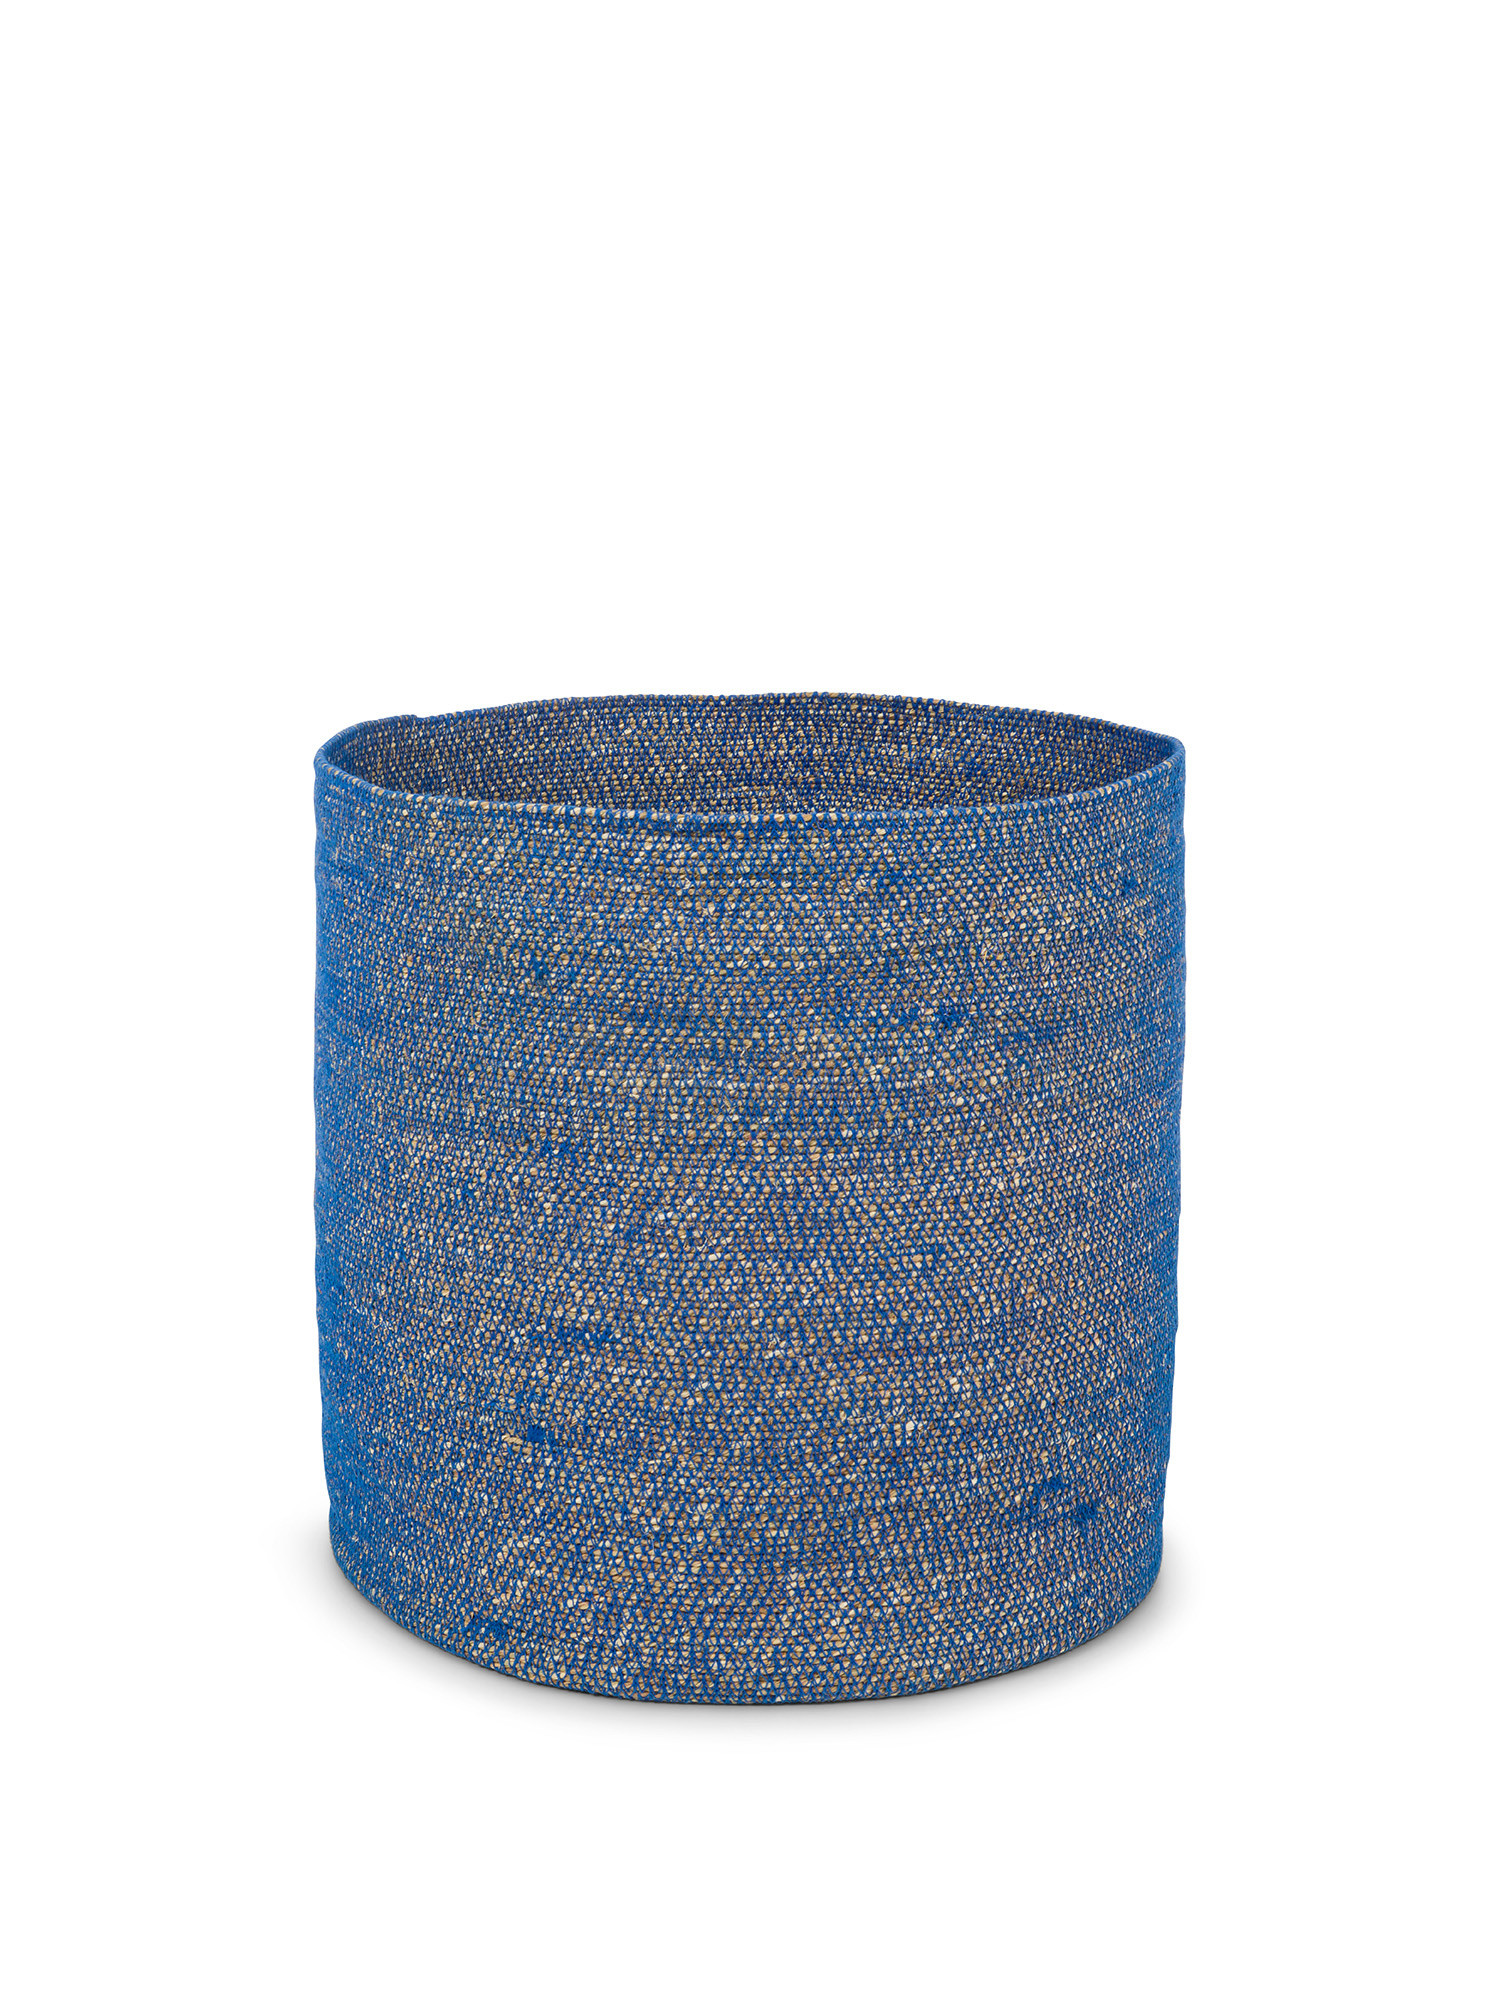 Handmade seagrass basket, Blue, large image number 0